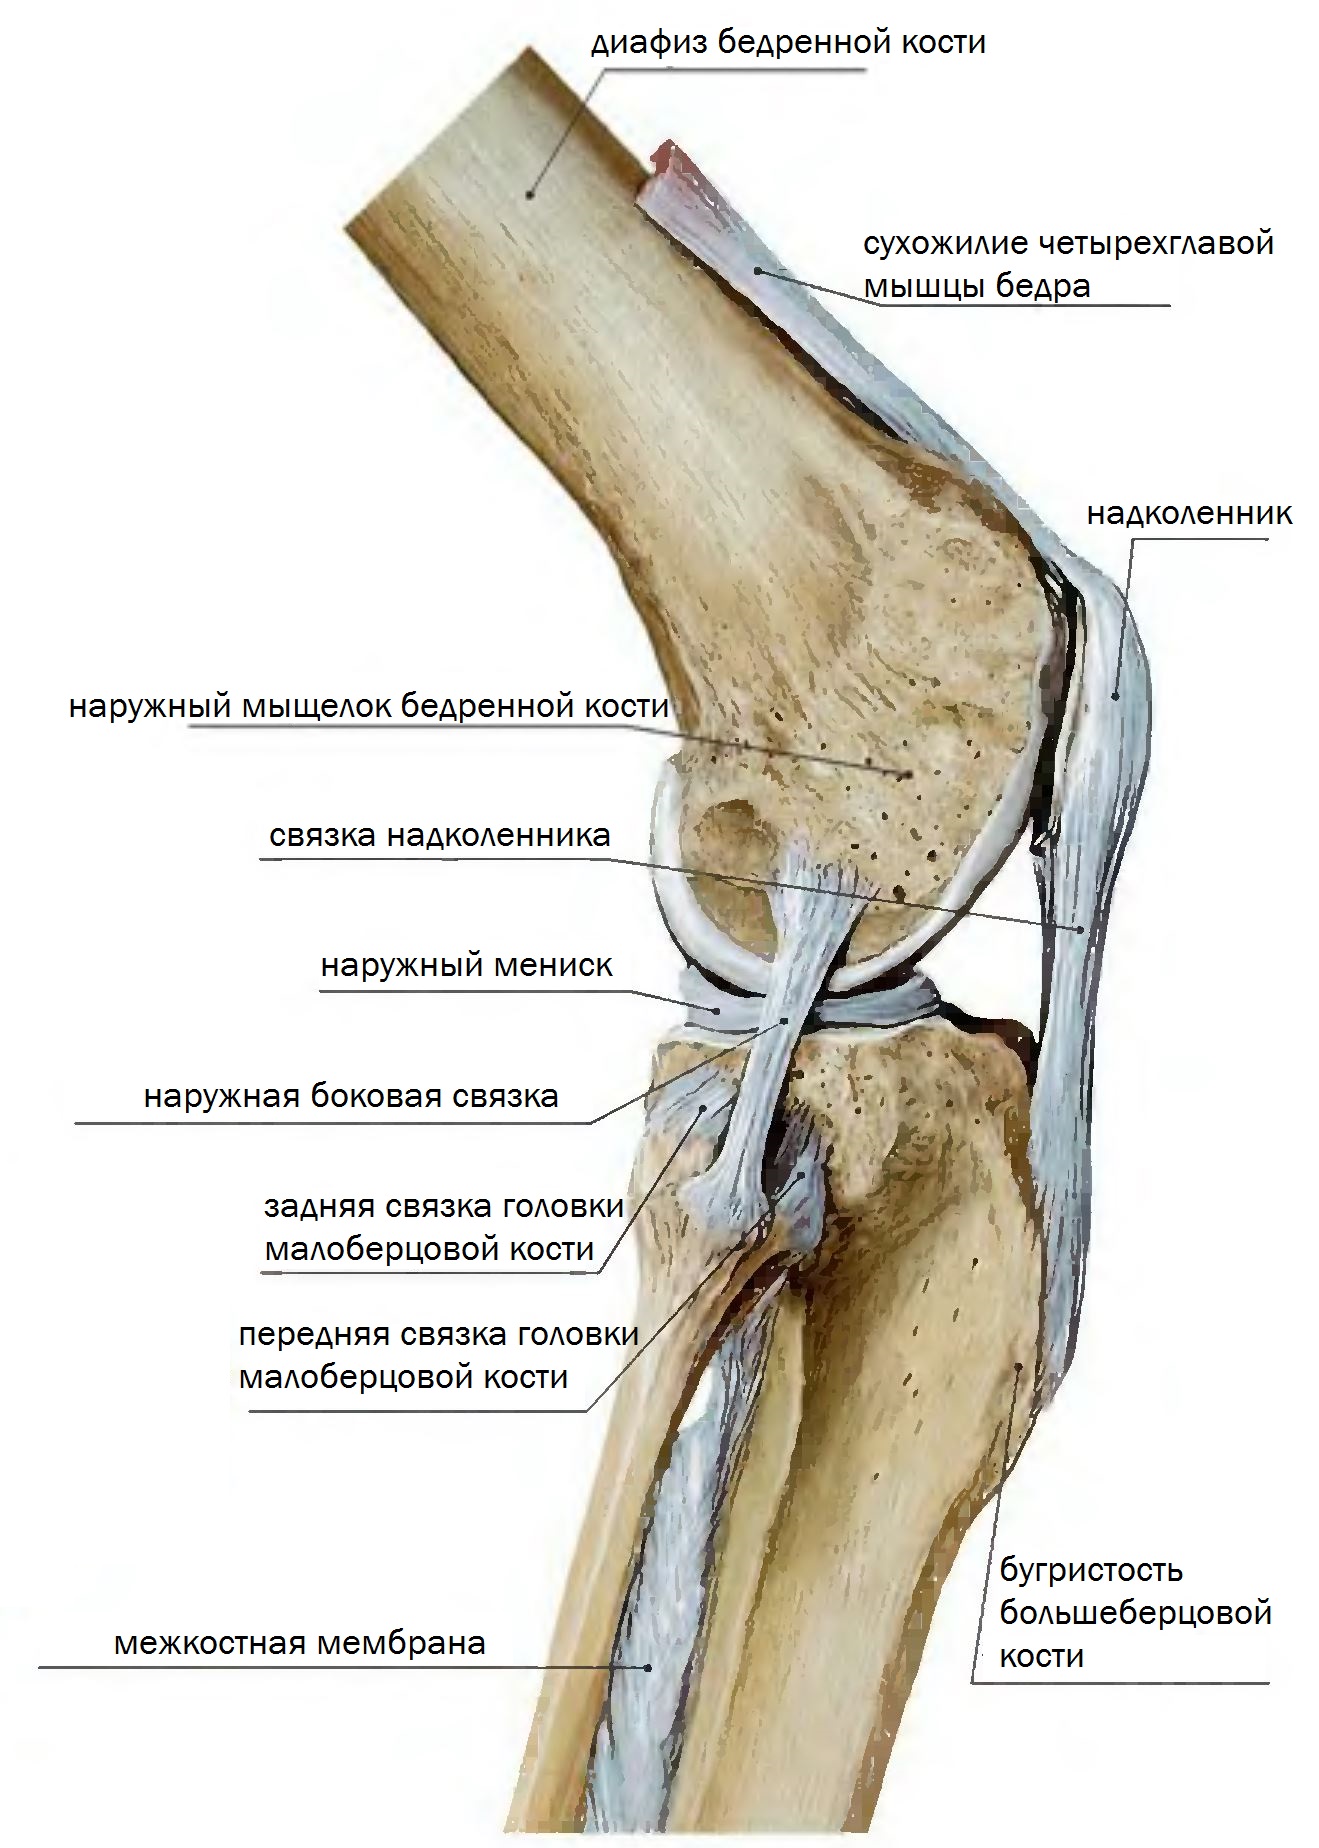 Медиальный мыщелок большеберцовой. Мыщелок коленного сустава большеберцовой кости. Коленный сустав анатомия связки надколенника. Коленный сустав малоберцовая кость. Передняя связка головки малоберцовой кости.